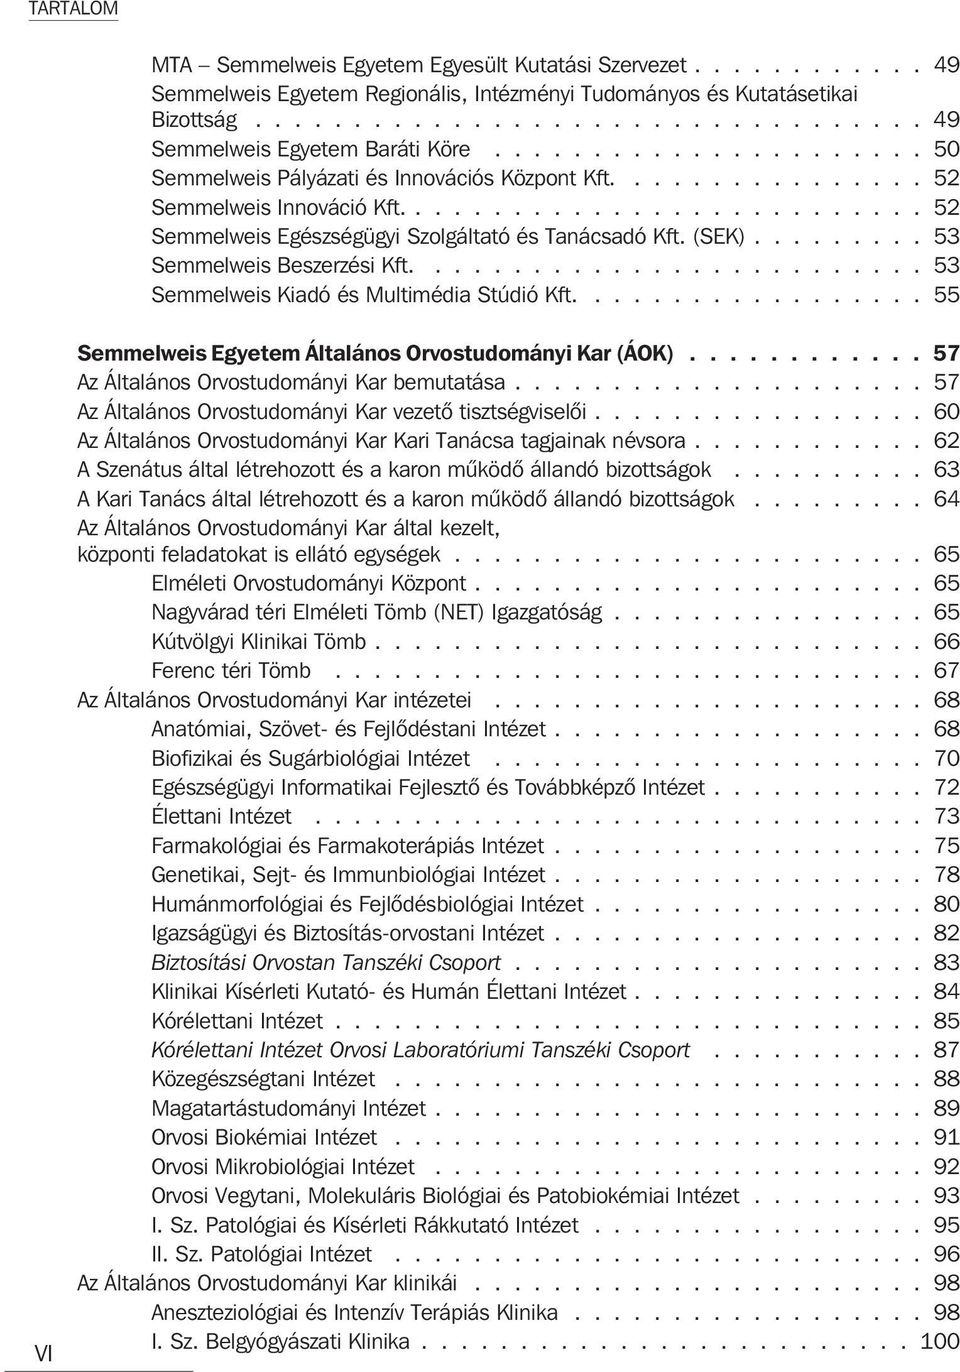 (SEK)......... 53 Semmelweis Beszerzési Kft.......................... 53 Semmelweis Kiadó és Multimédia Stúdió Kft.................. 55 VI Semmelweis Egyetem Általános Orvostudományi Kar (ÁOK).